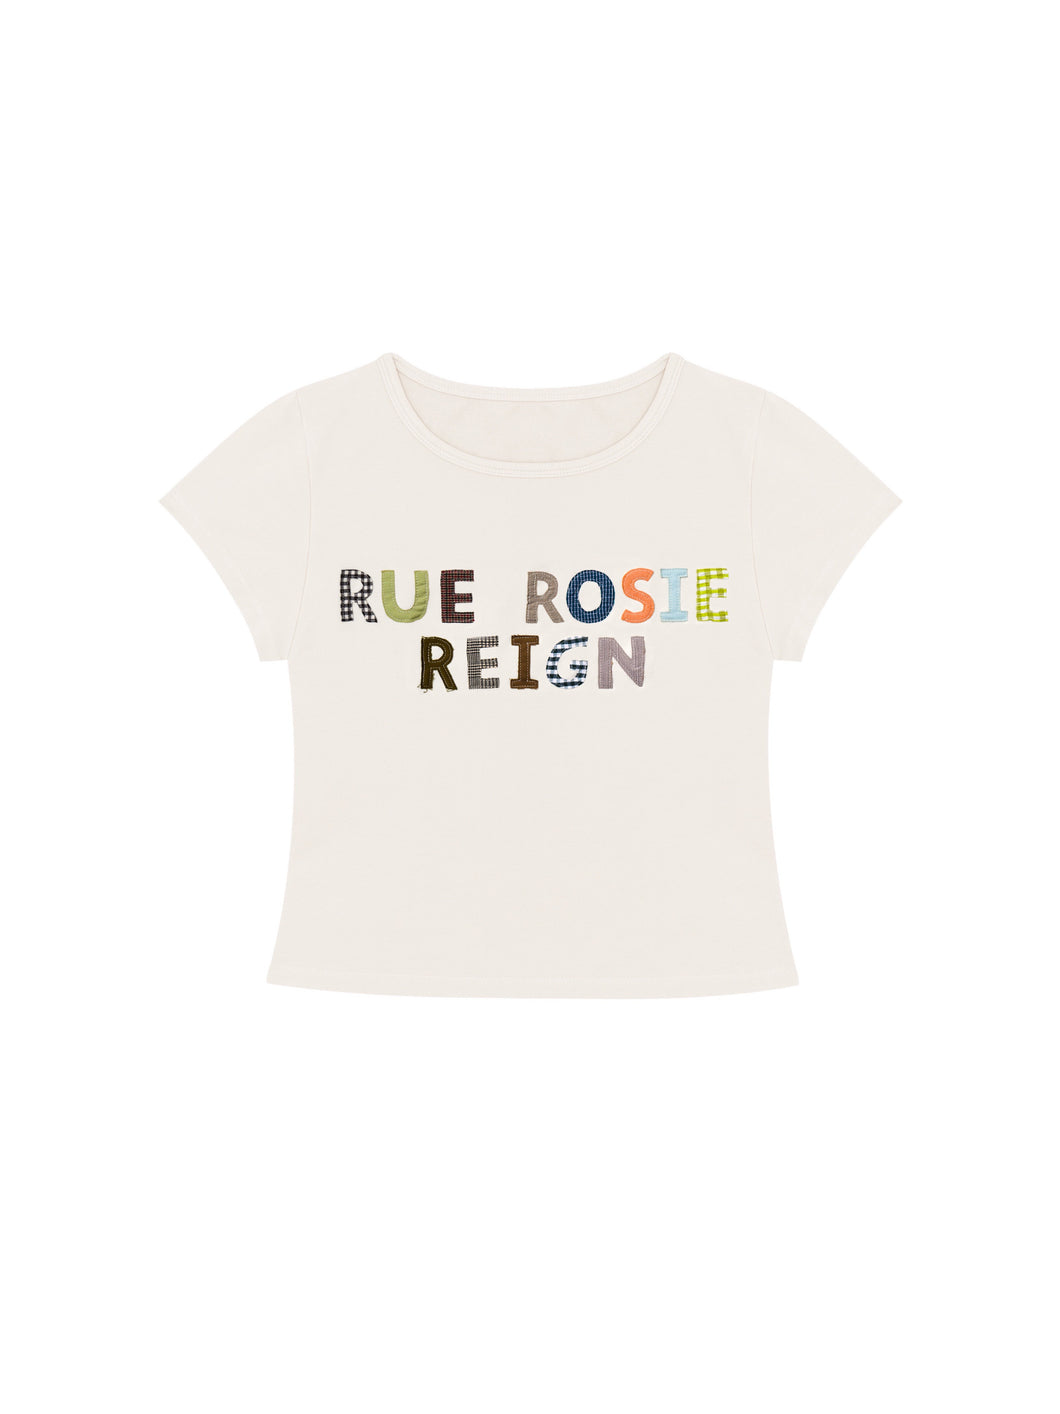 RUE ROSIE REIGN Baby Tee